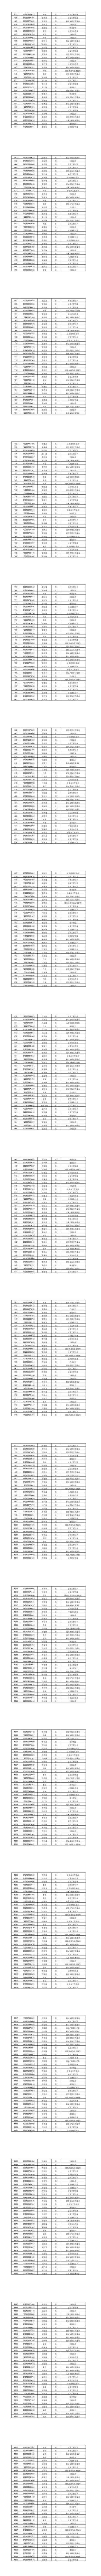 广西建设职业技术学院2020年高职单独招生录取名单公示(2).jpg